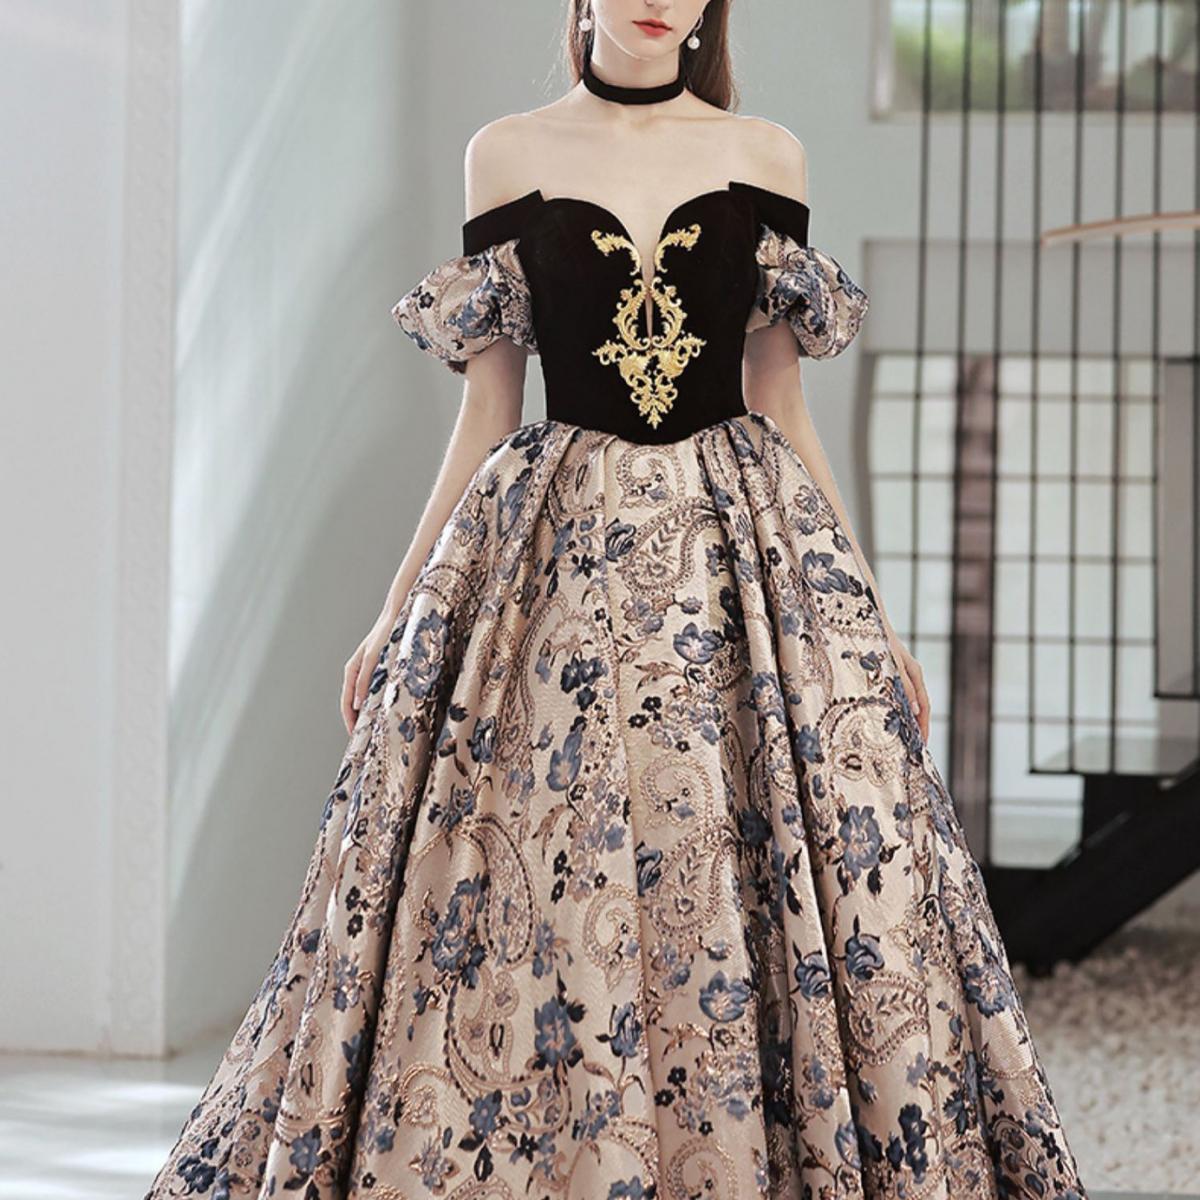 Elegant Evening Dresses Jacquard Applique Splice Color Vintage Flower A Line Off Shoulder Detachable Sleeve Formal Party